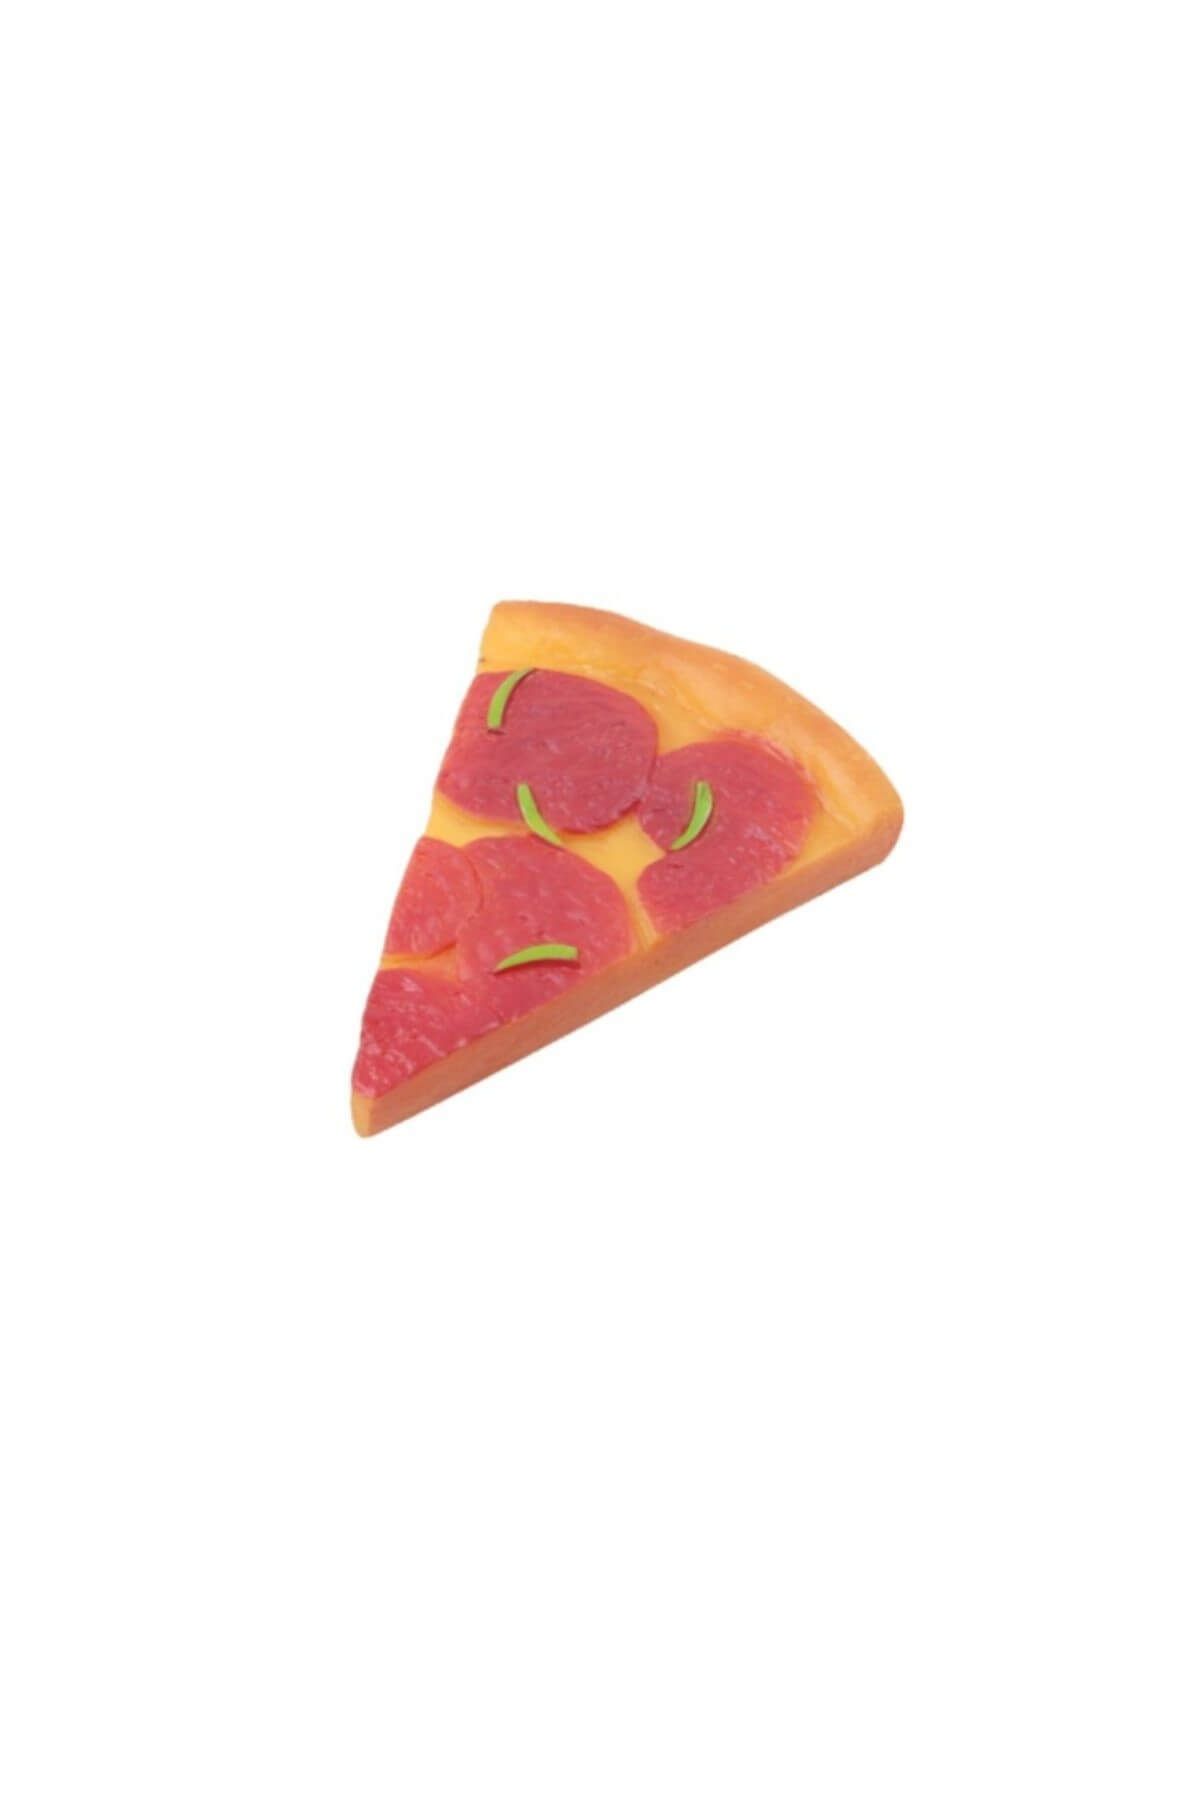 Pawise 14124 Pizza Dilimi Köpek Oyuncağı 11 cm